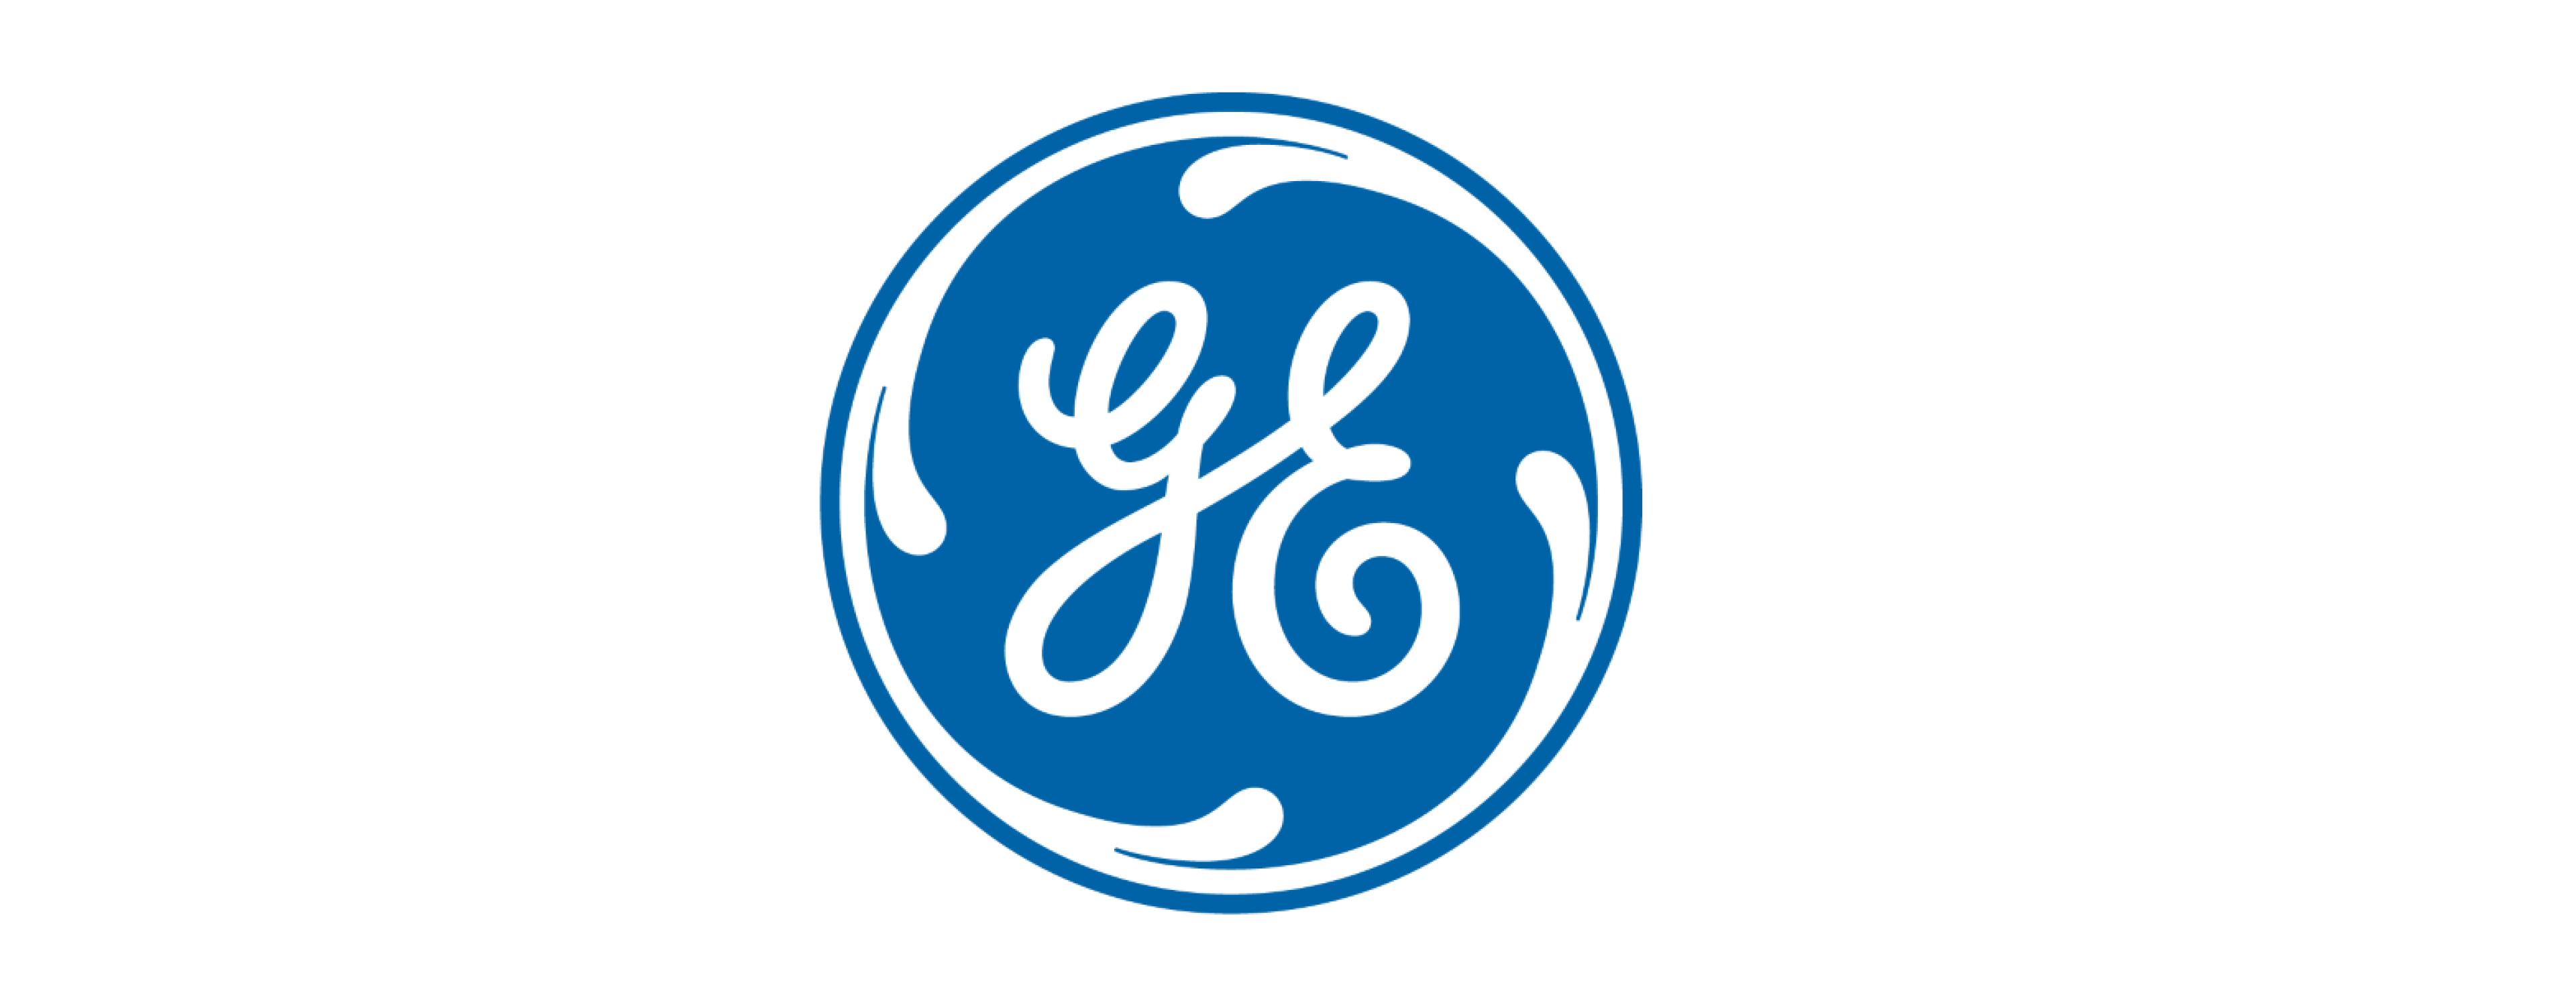 EY ge digital logo